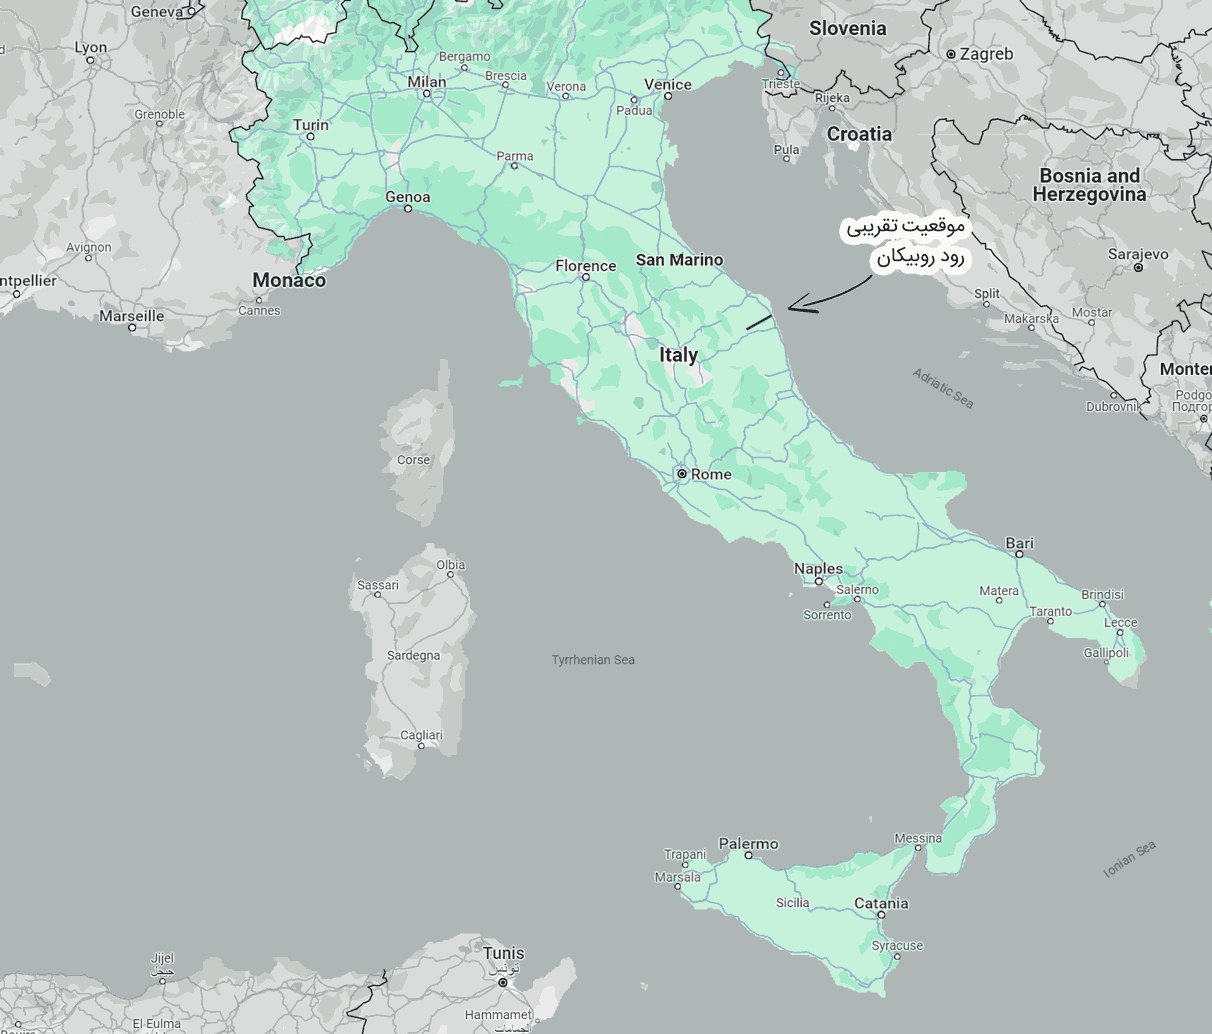 نقشهٔ ایتالیا در میان سایر کشور اروپا. اگر ایتالیا را به شکل یک چکمه عمودی در نقشه در نظر بگیریم، روبیکان تقریباً در ارتفاع یک‌سوم بالای چکمه قرار گرفته. اما طول کمی دارد. اگر طولش سه برابر می‌شد، چکمه را به دو بخش یک‌سوم شمالی و دو سوم جنوبی تقسیم می‌کرد